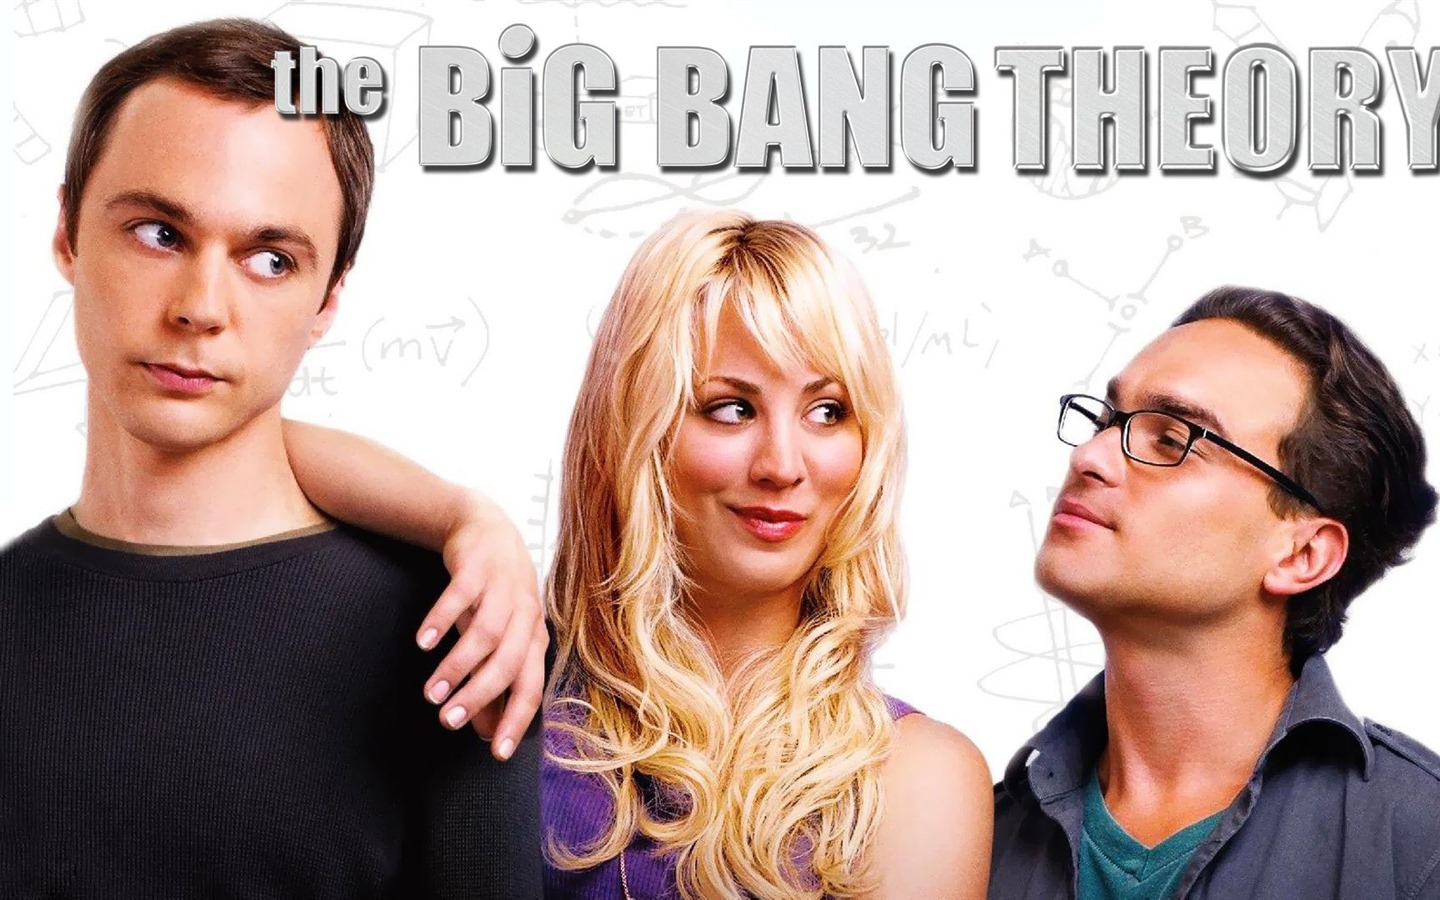 The Big Bang Theory 生活大爆炸 电视剧高清壁纸21 - 1440x900